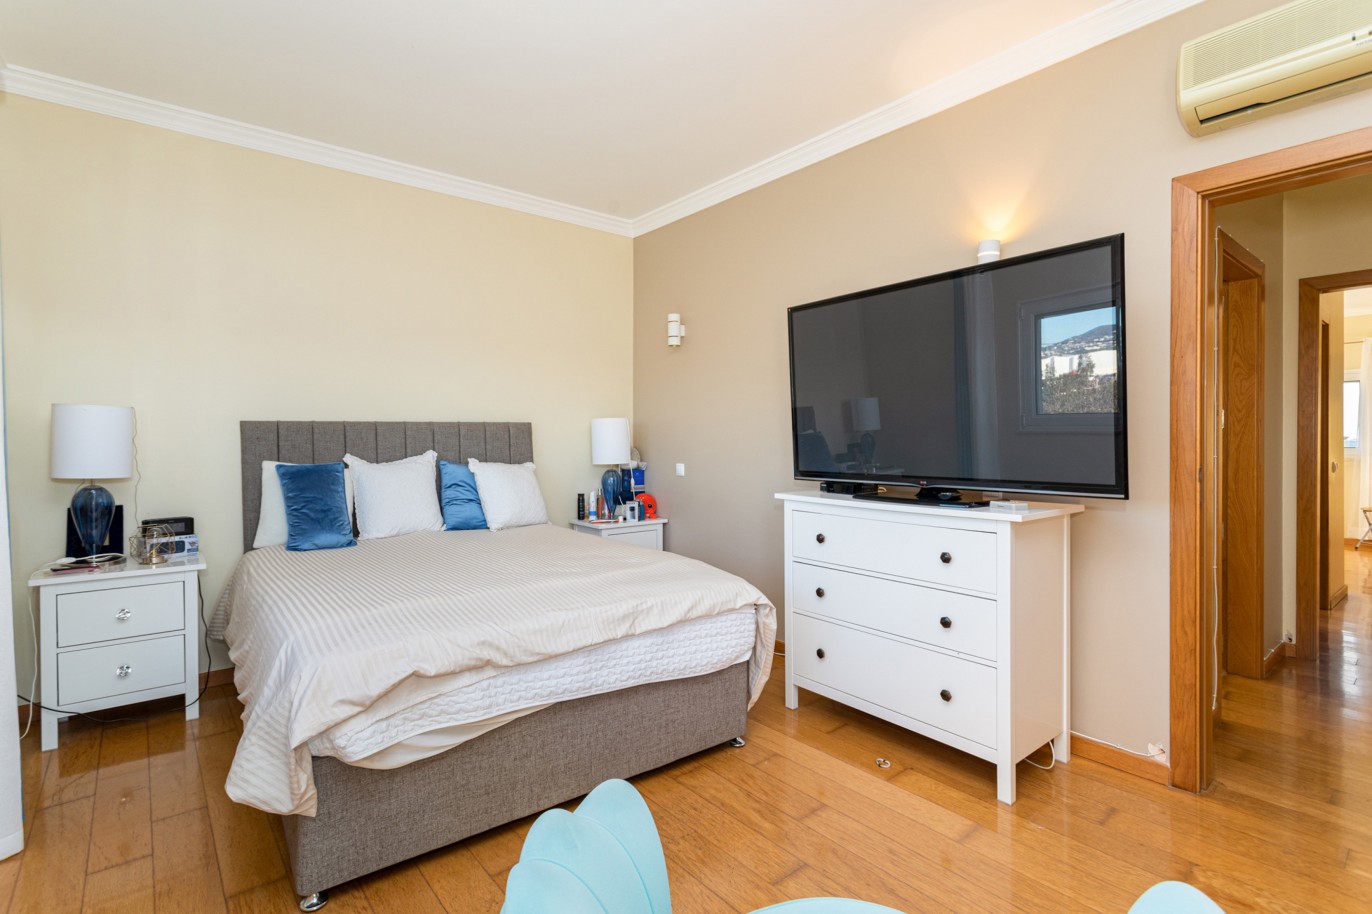 Villa de 4 dormitorios en zona de prestigio, en venta en Almancil, Algarve_217660